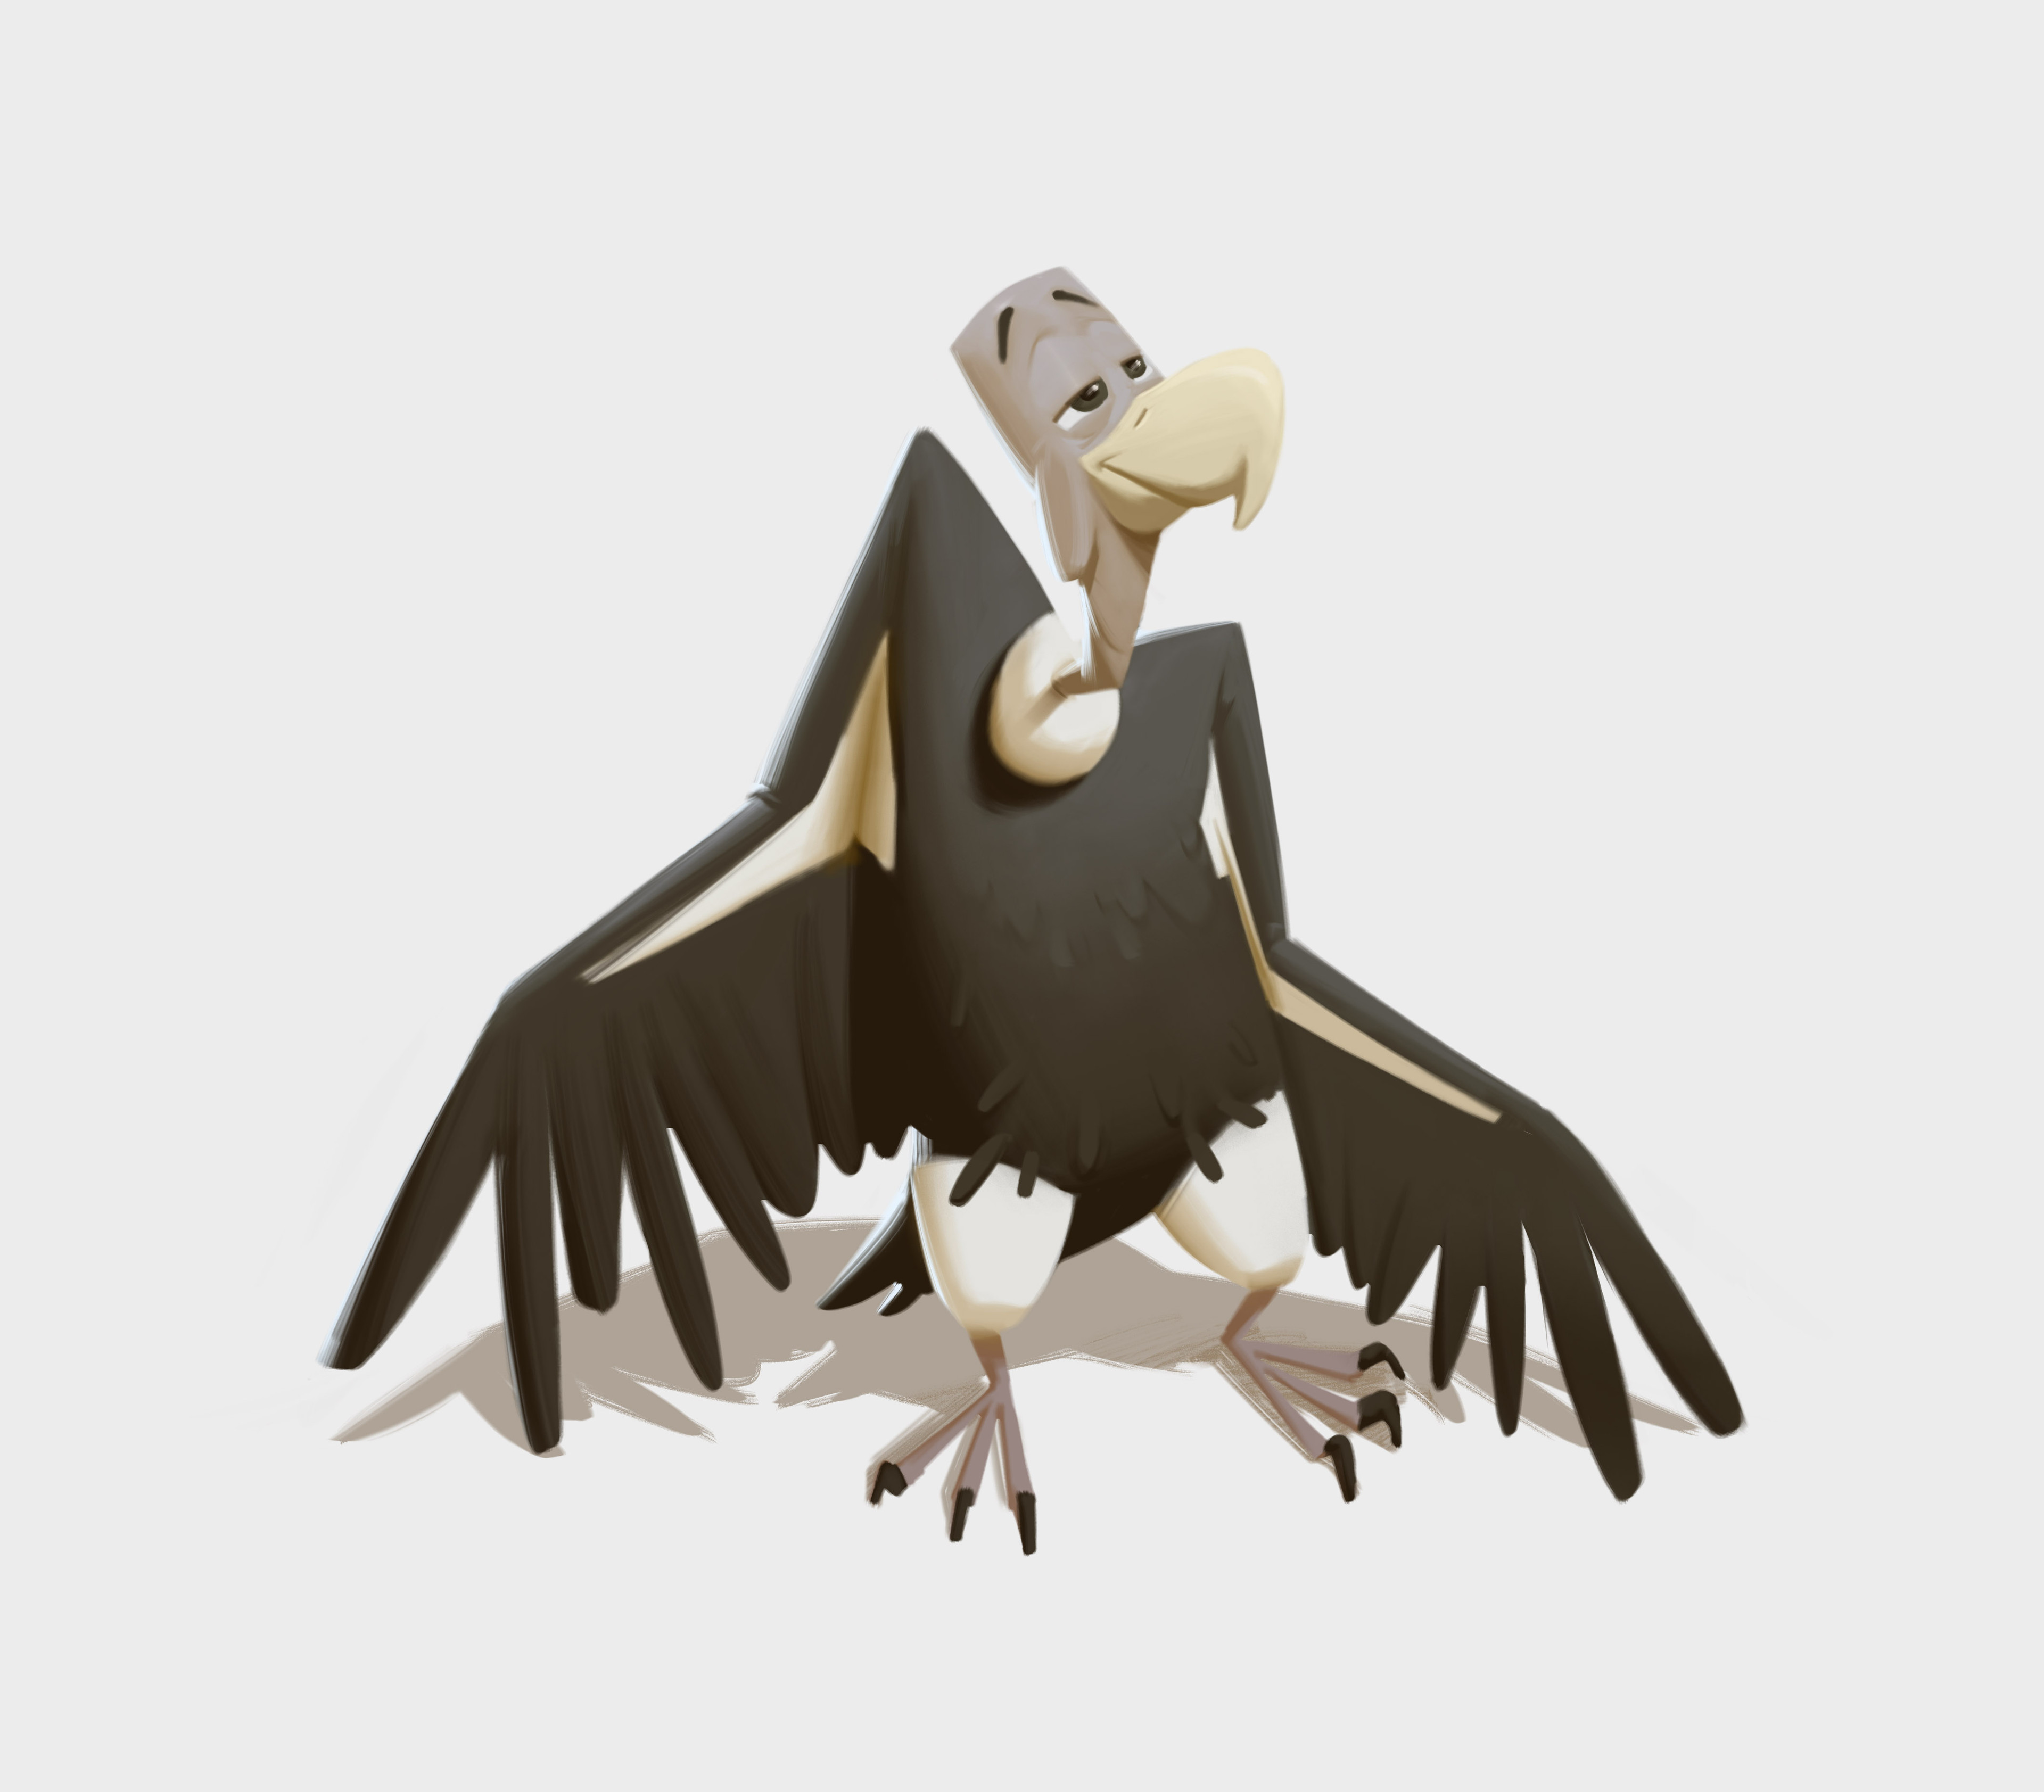 vulture cartoon flying